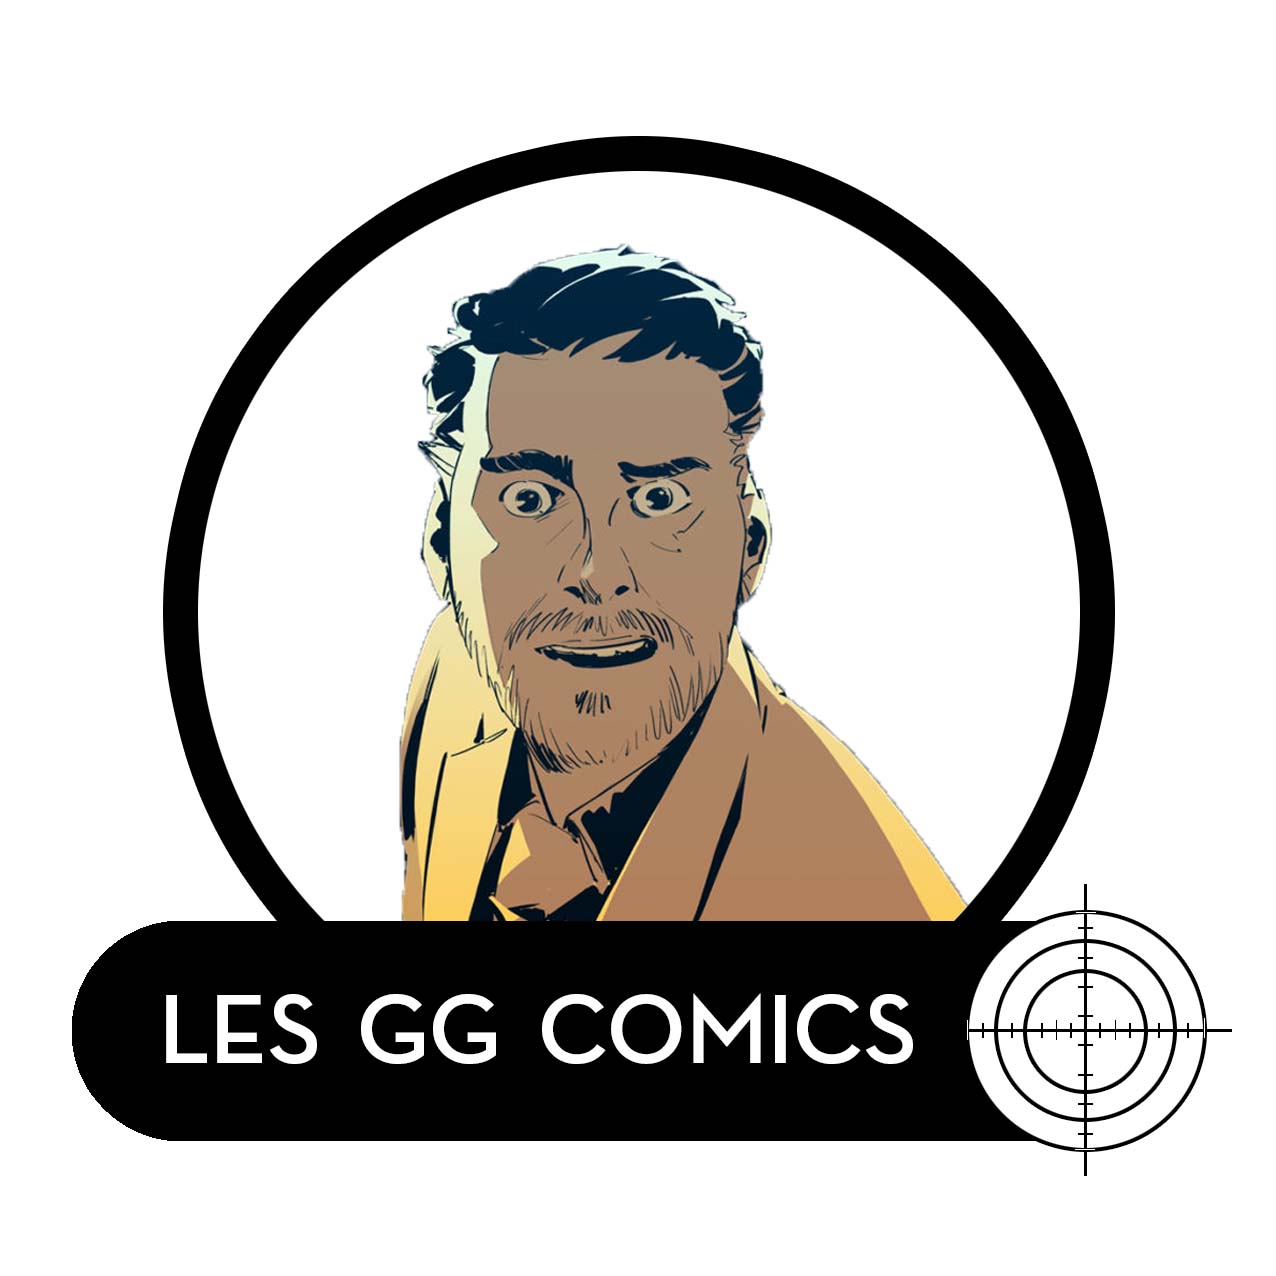 Les GG comics HS #3 : ITW de NICOLAS PETRIMAUX 